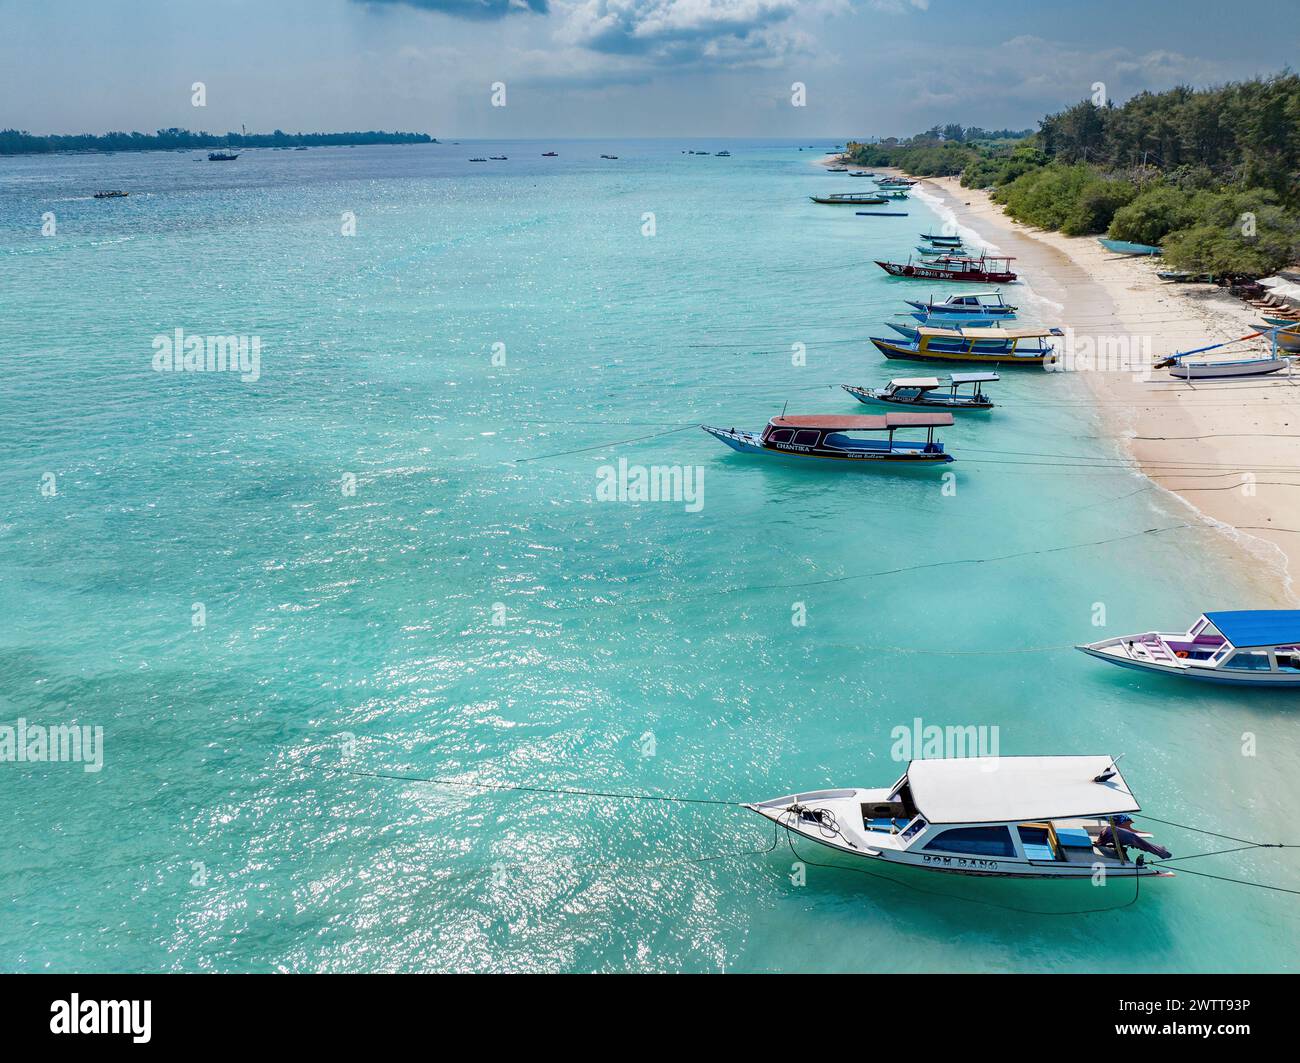 Ein ruhiger tropischer Strand mit Booten, die in klarem, blauem Wasser vertäut sind Stockfoto